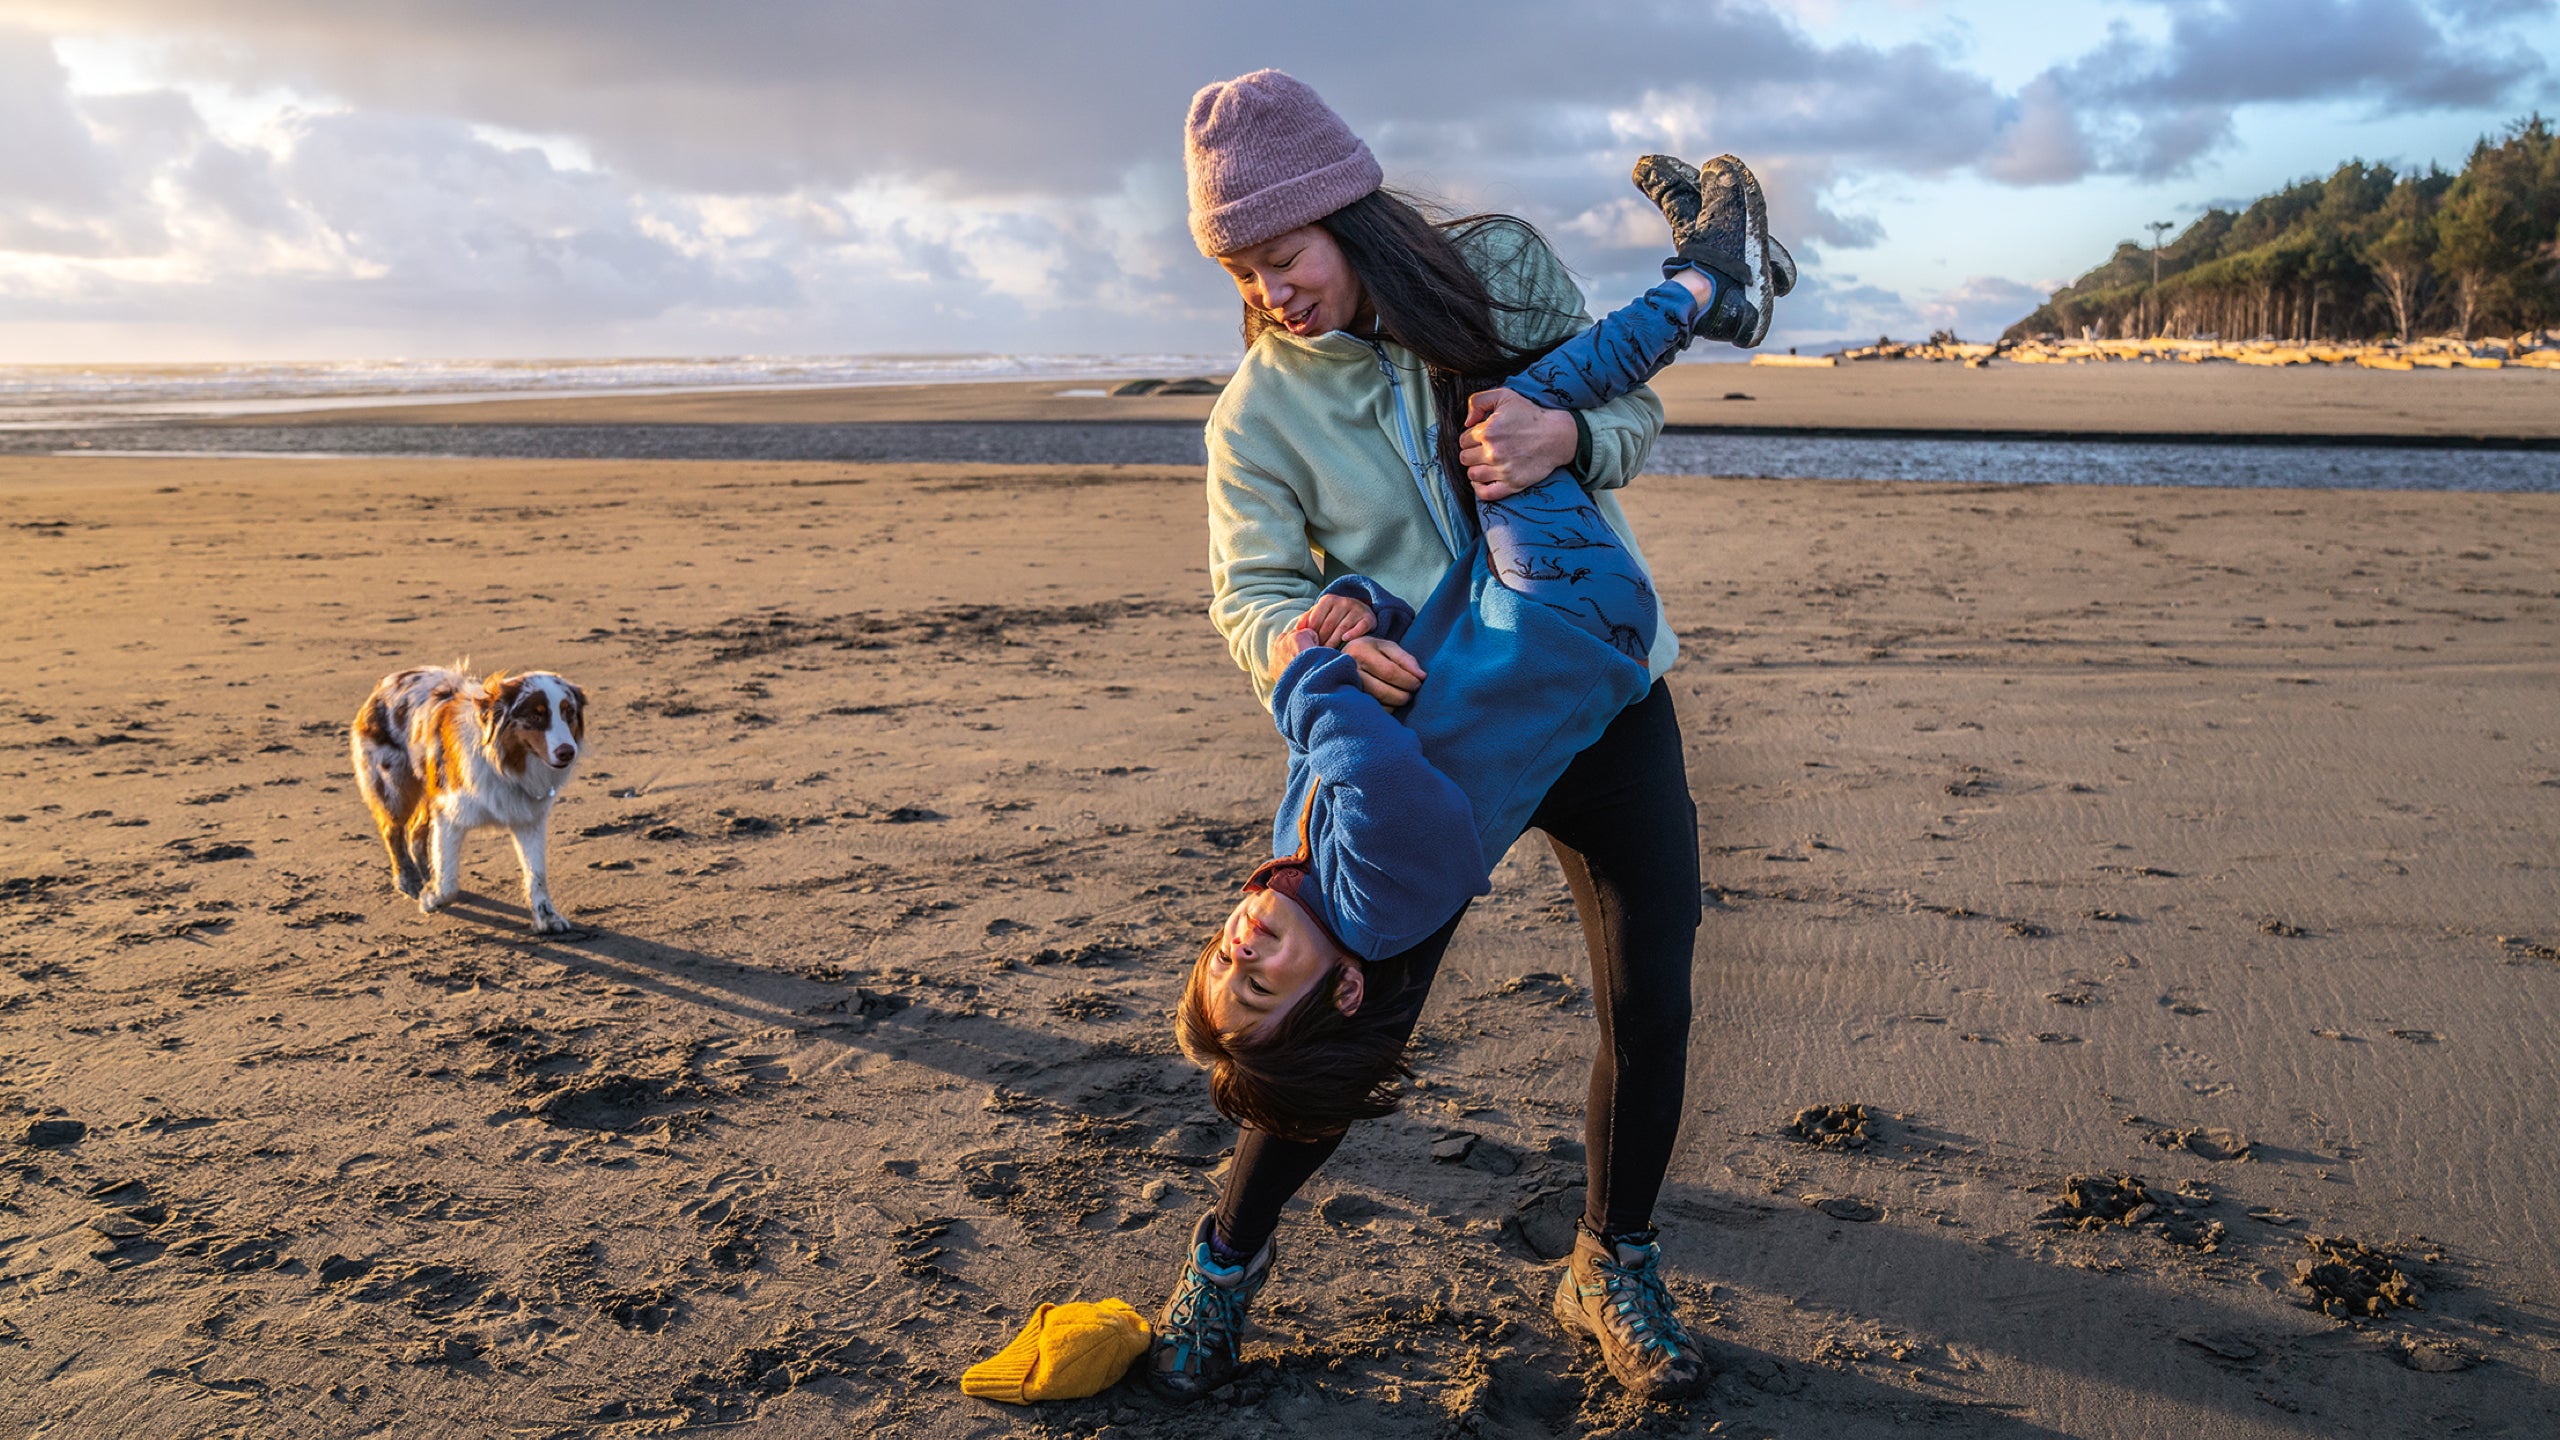 Women's Fleece Jumpers, Hoodies & Vests - Patagonia New Zealand